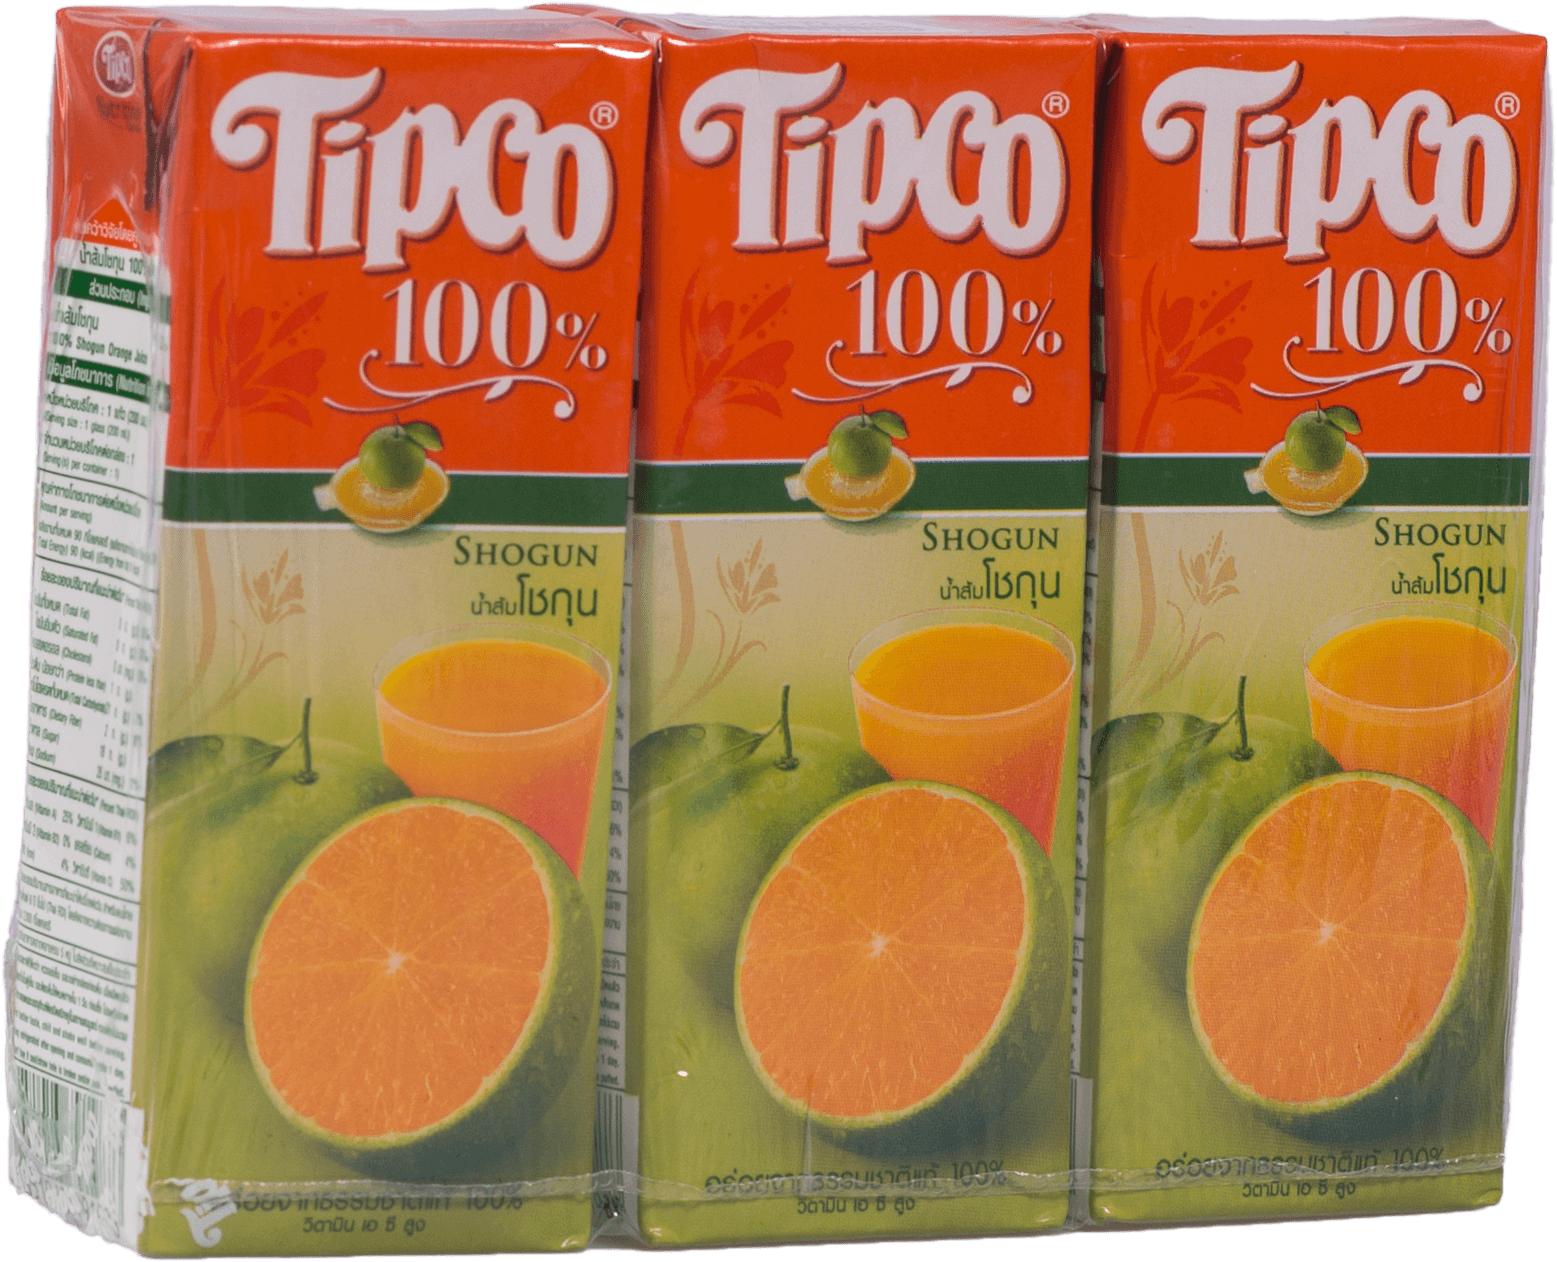 น้ำส้มโชกุน Tipco 100% 200ml. (1x3)